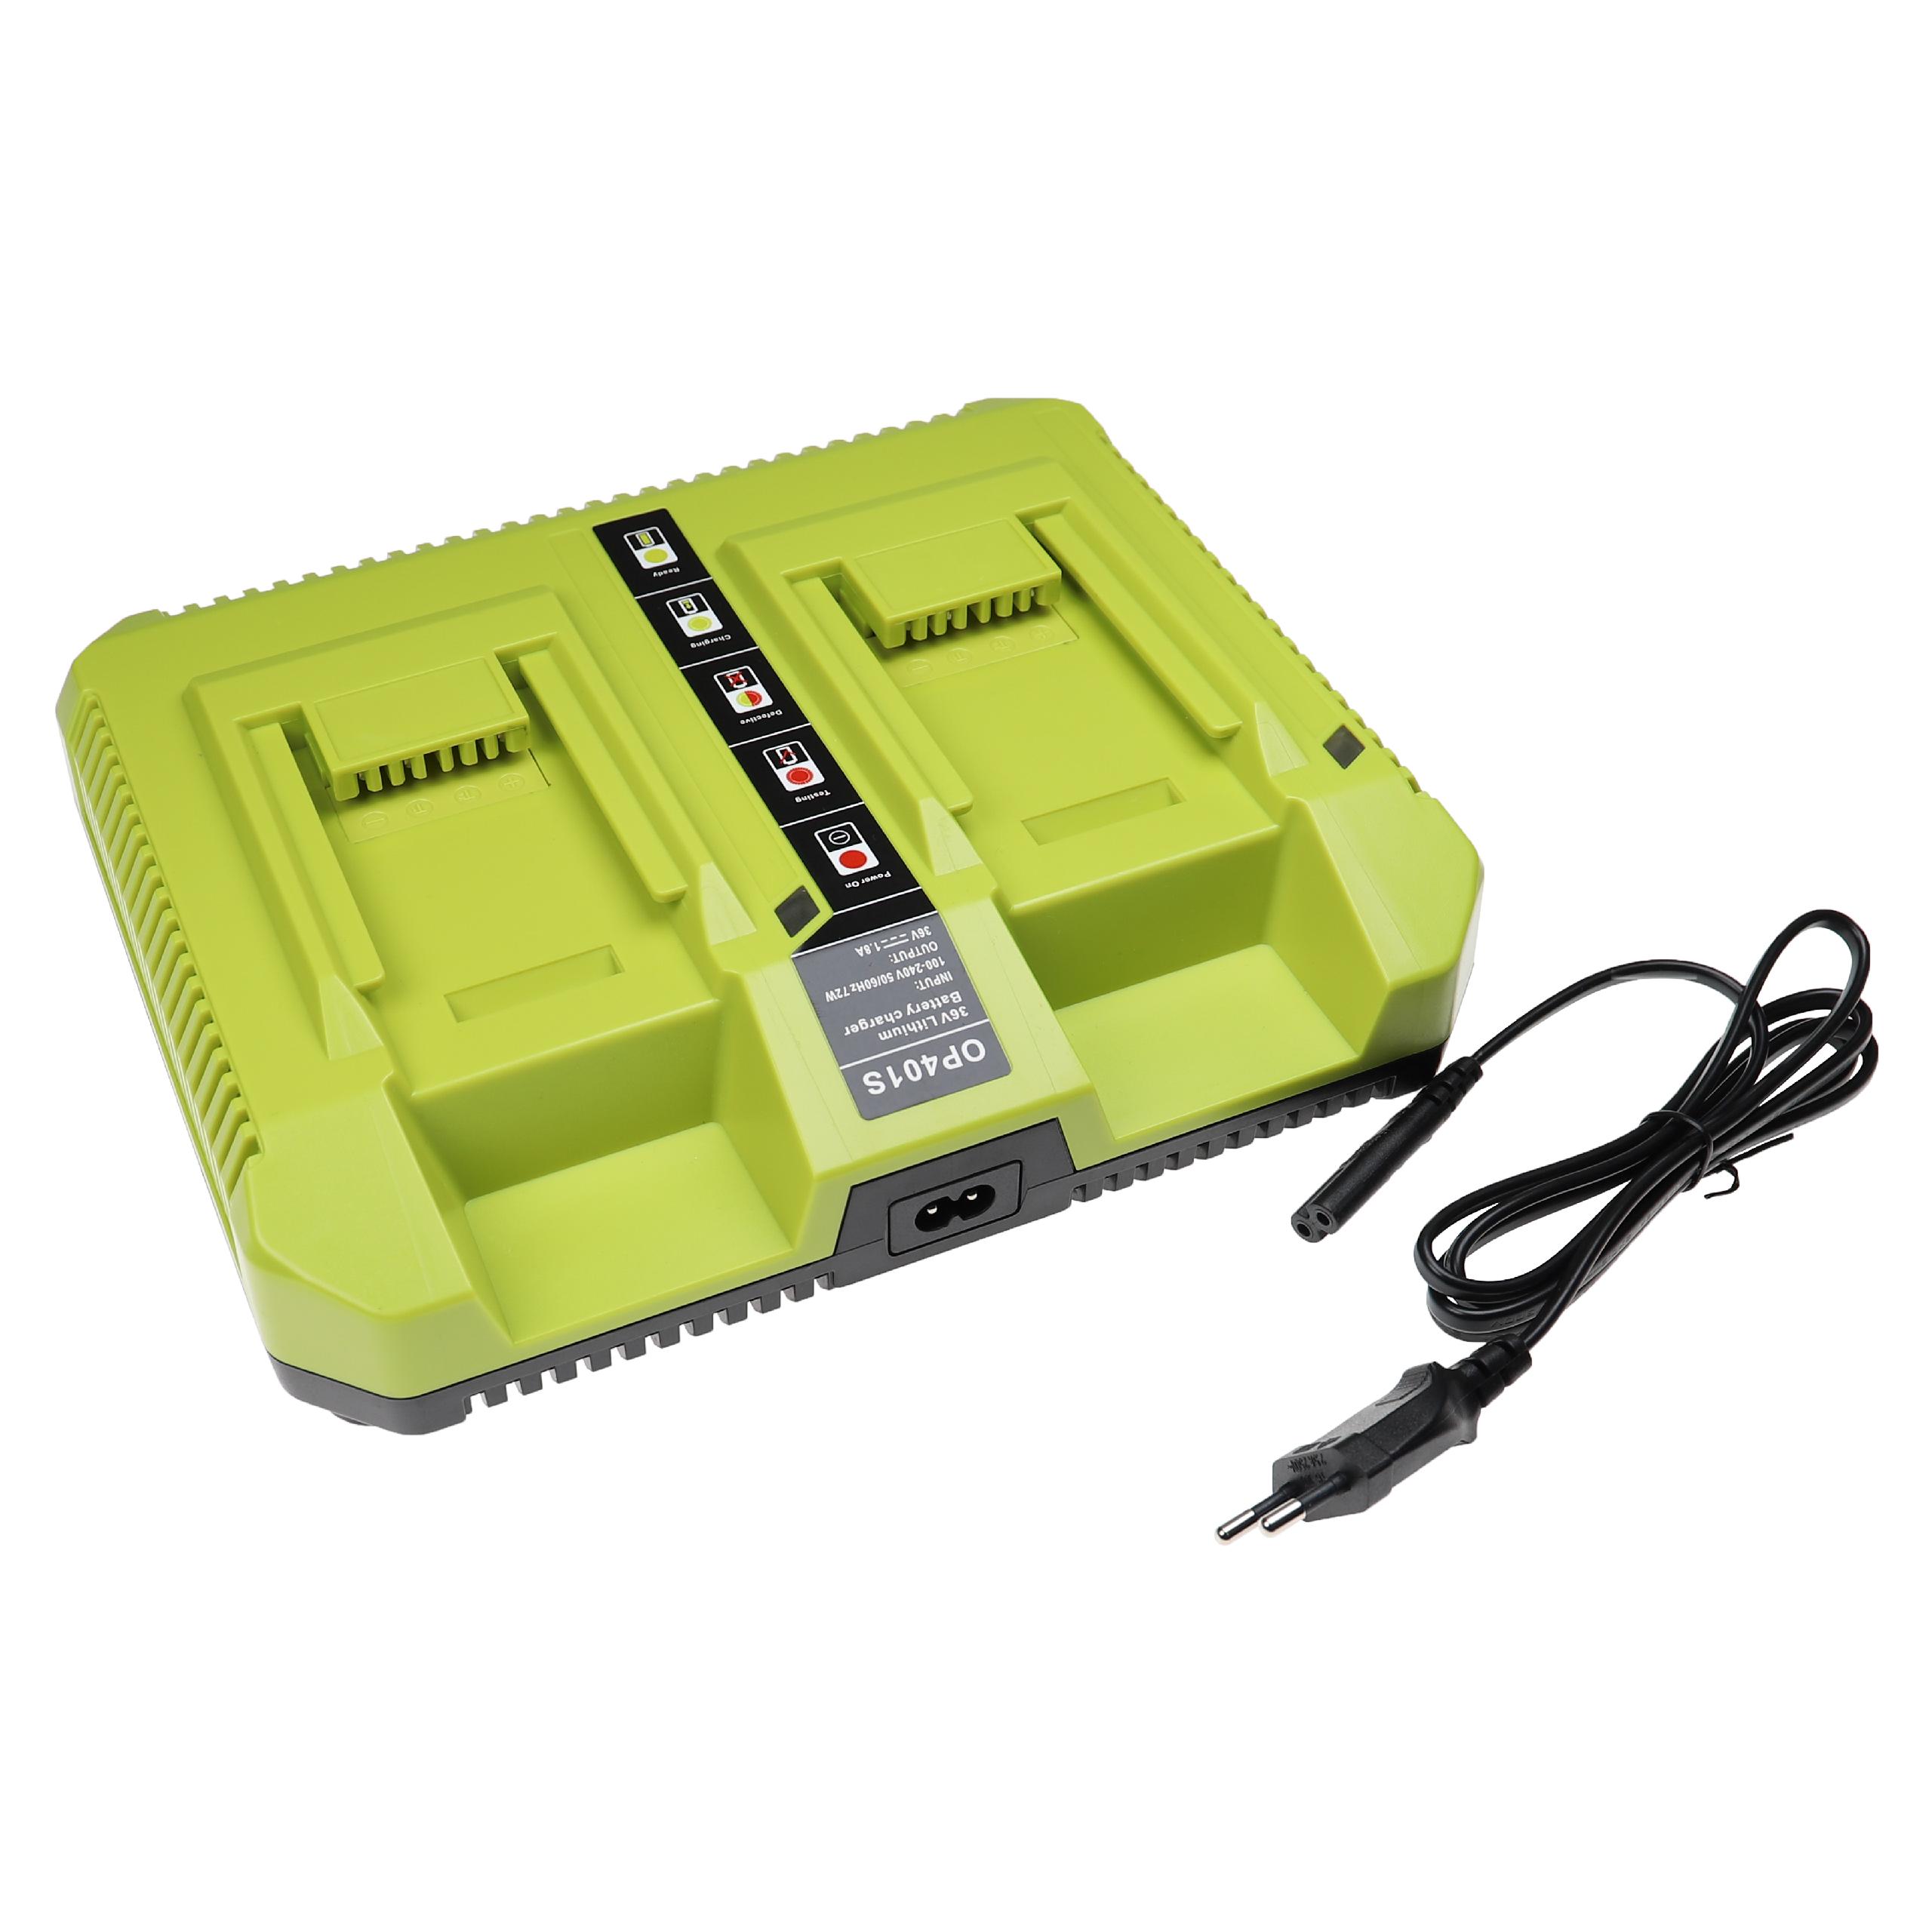 Cargador dual para la batería de tus herramientas / cortacésped Ryobi, RY40100 - 36 V / 1,8 A